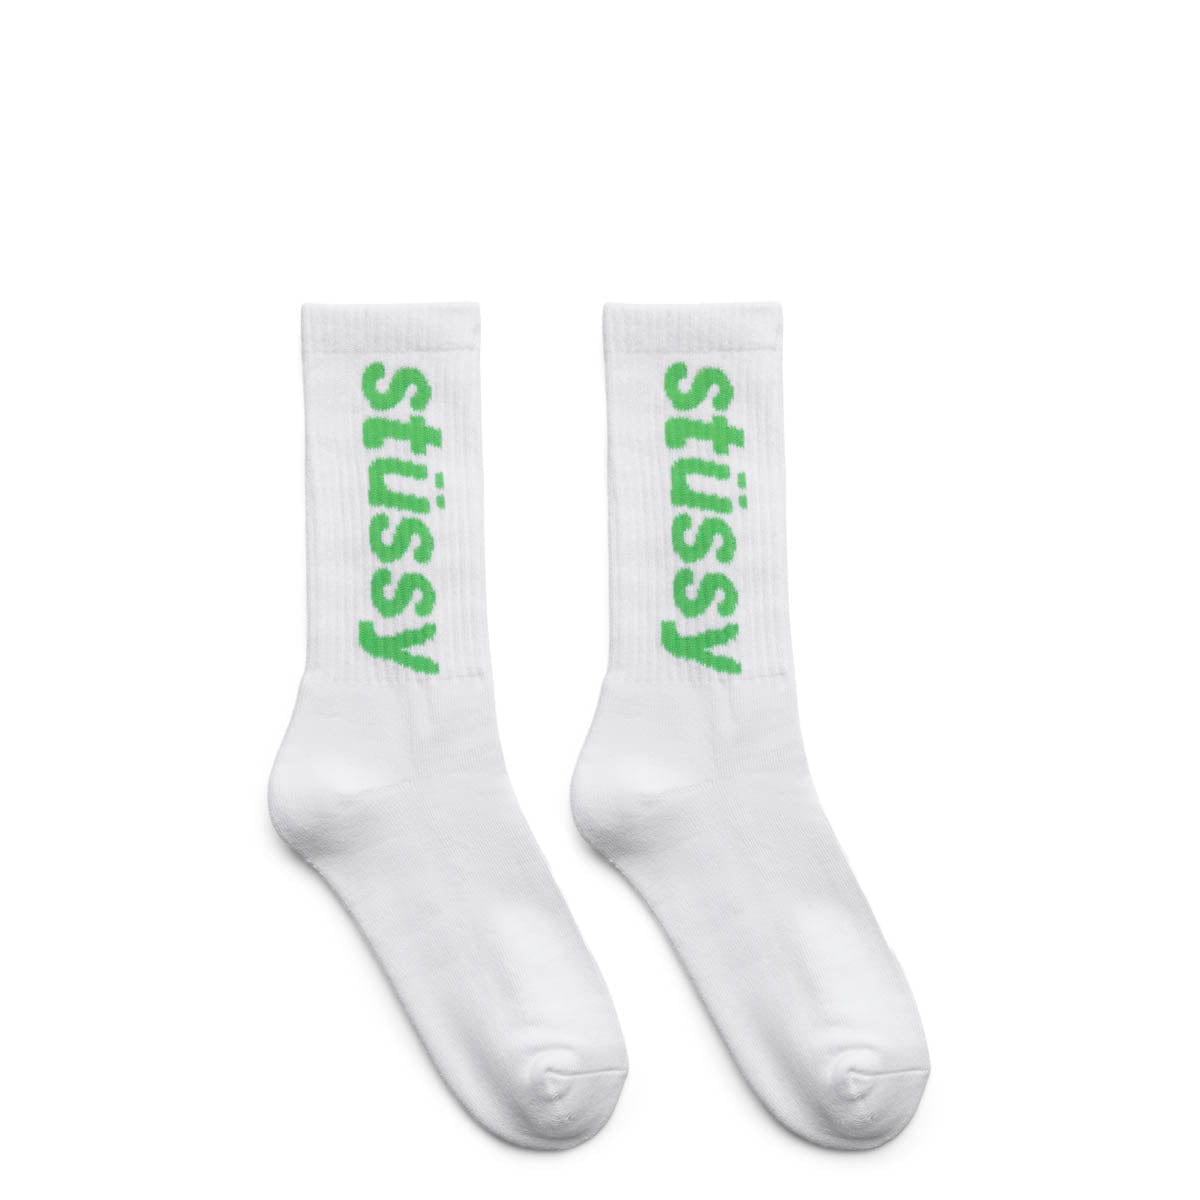 Stüssy Socks WHITE/KELLY / O/S HELVETICA CREW SOCKS